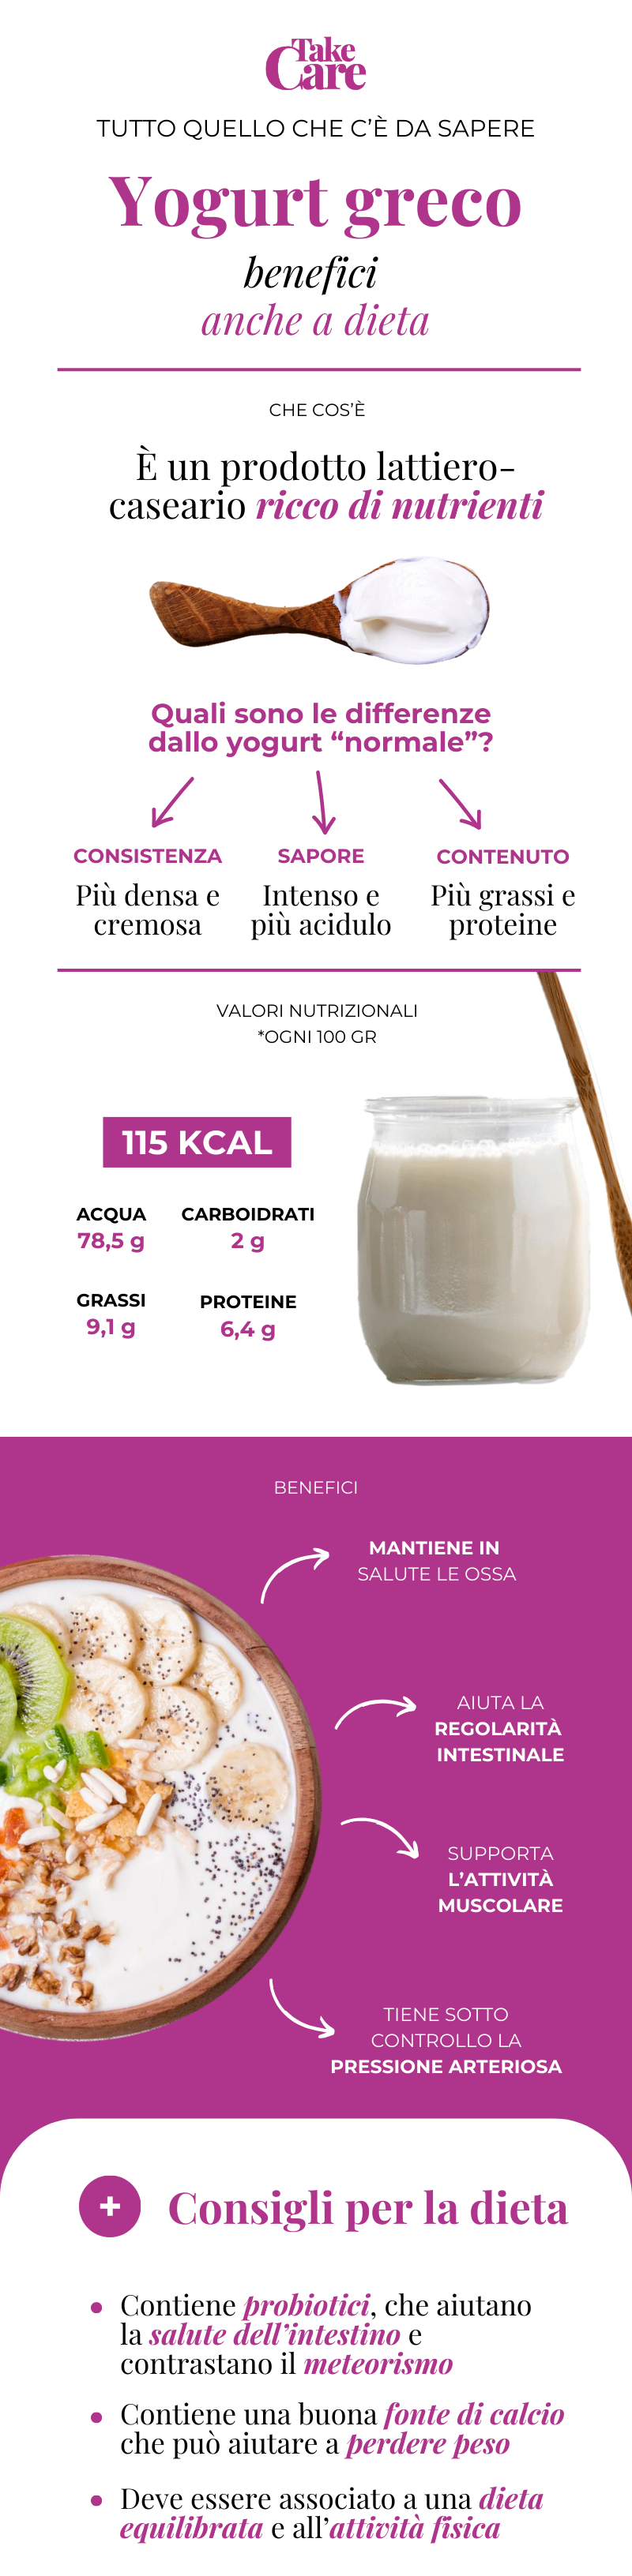 Infografica sullo yogurt greco